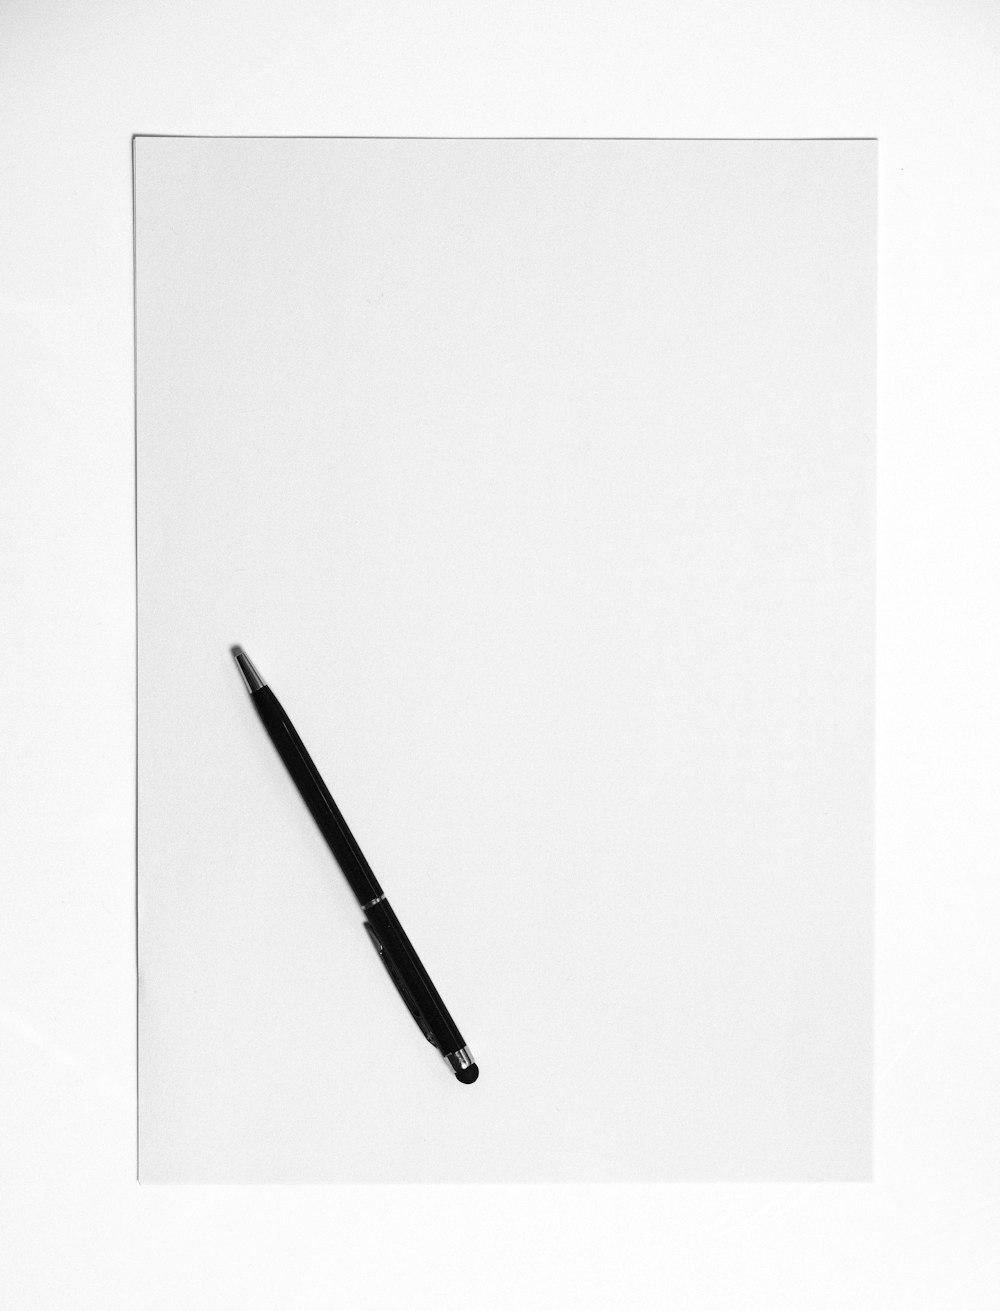 black pen on white surface